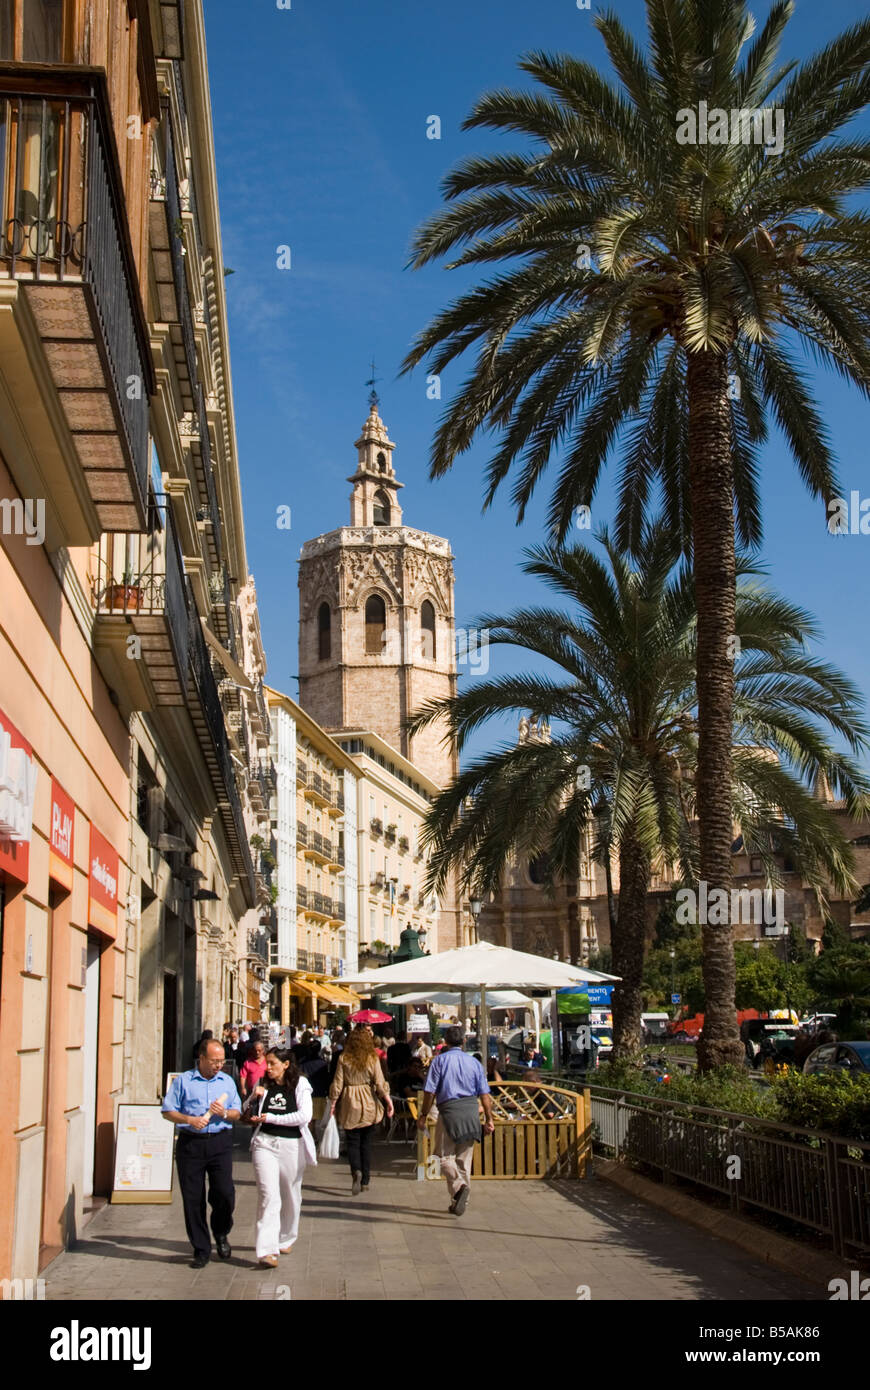 El Miguelete el campanario de la catedral, en la Plaza de la Reina en el centro histórico de la ciudad de Valencia, España Foto de stock